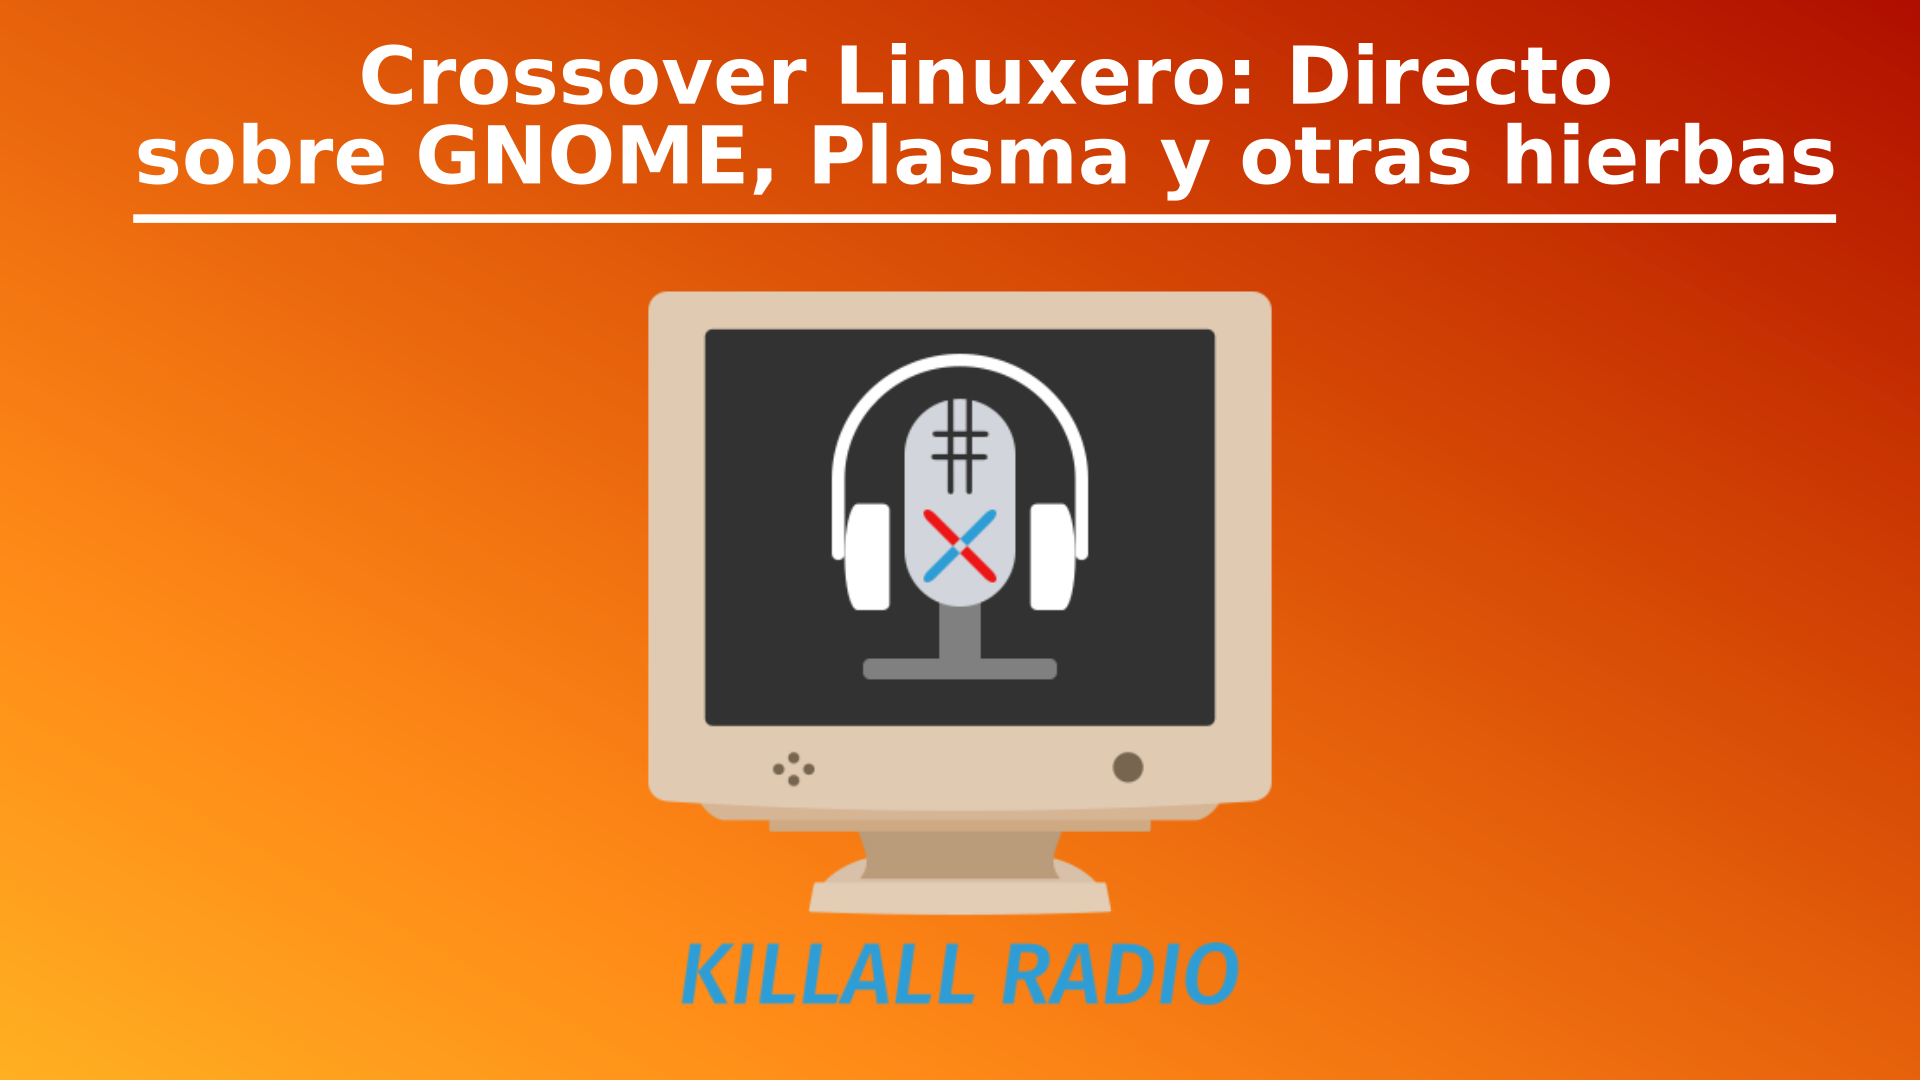 Crossover Linuxero KilallRadio